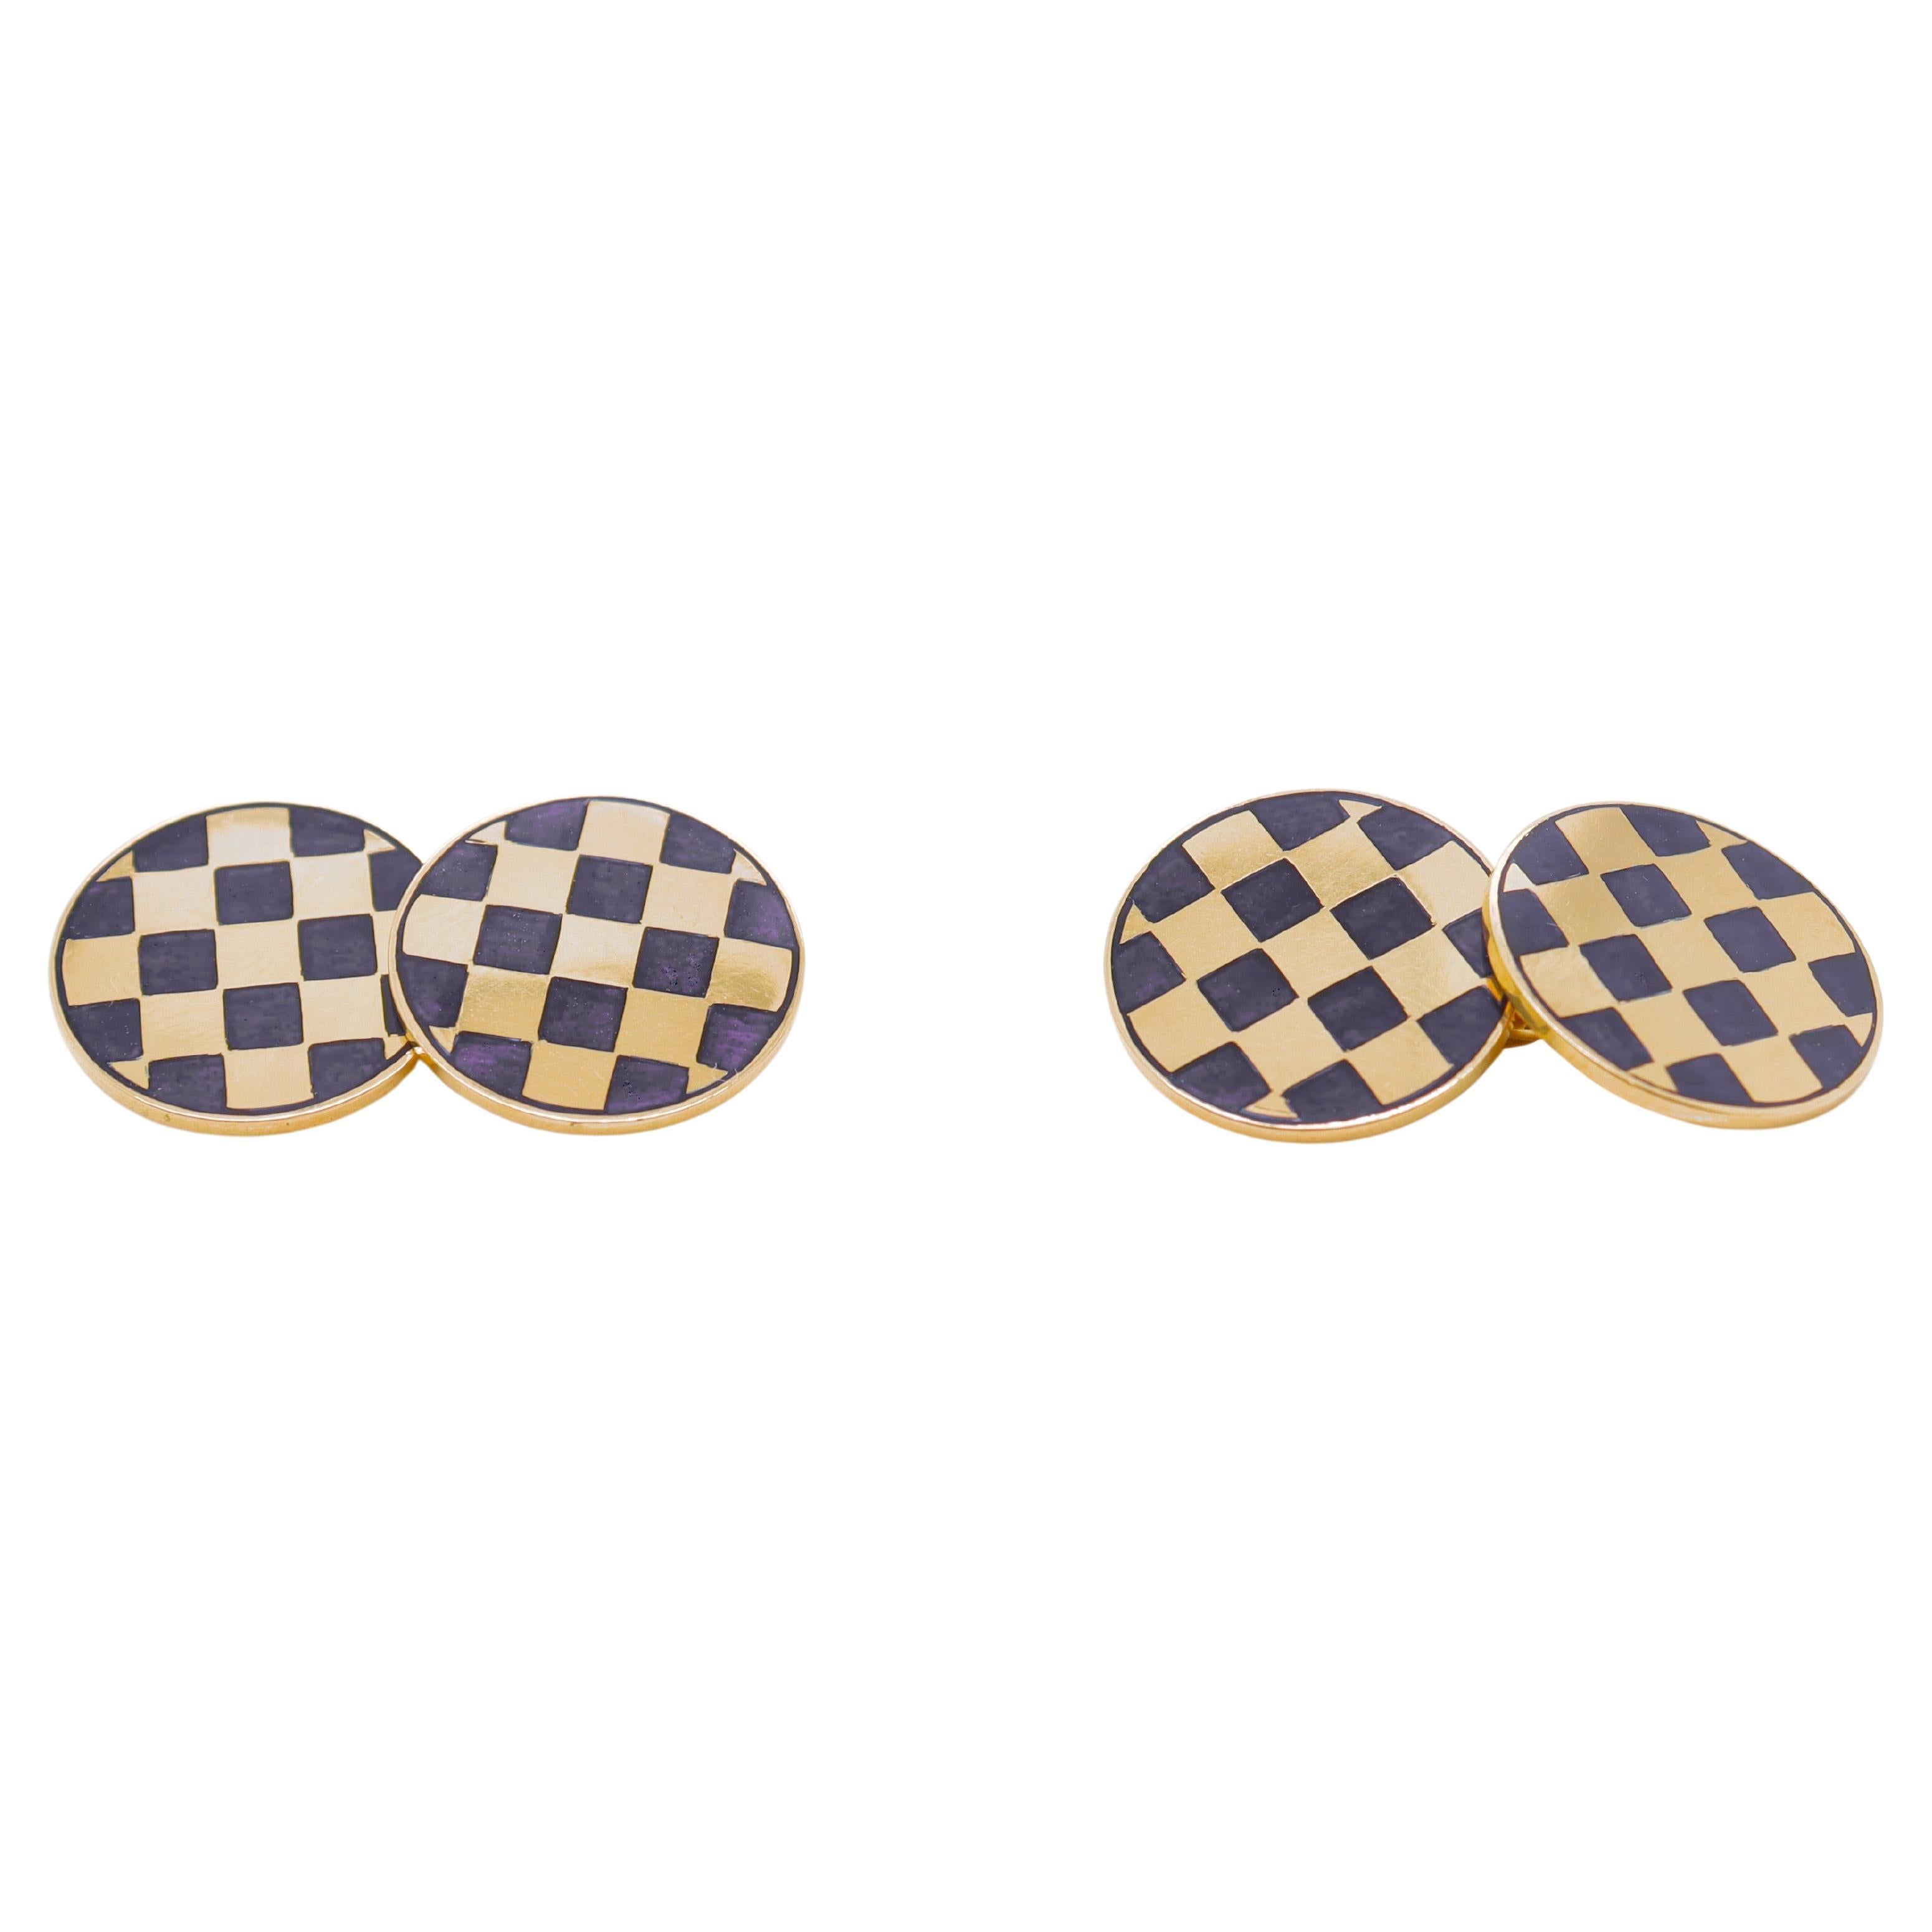 Paar Manschettenknöpfe aus 14 Karat Gelbgold und blauer Emaille mit Schachbrettmuster